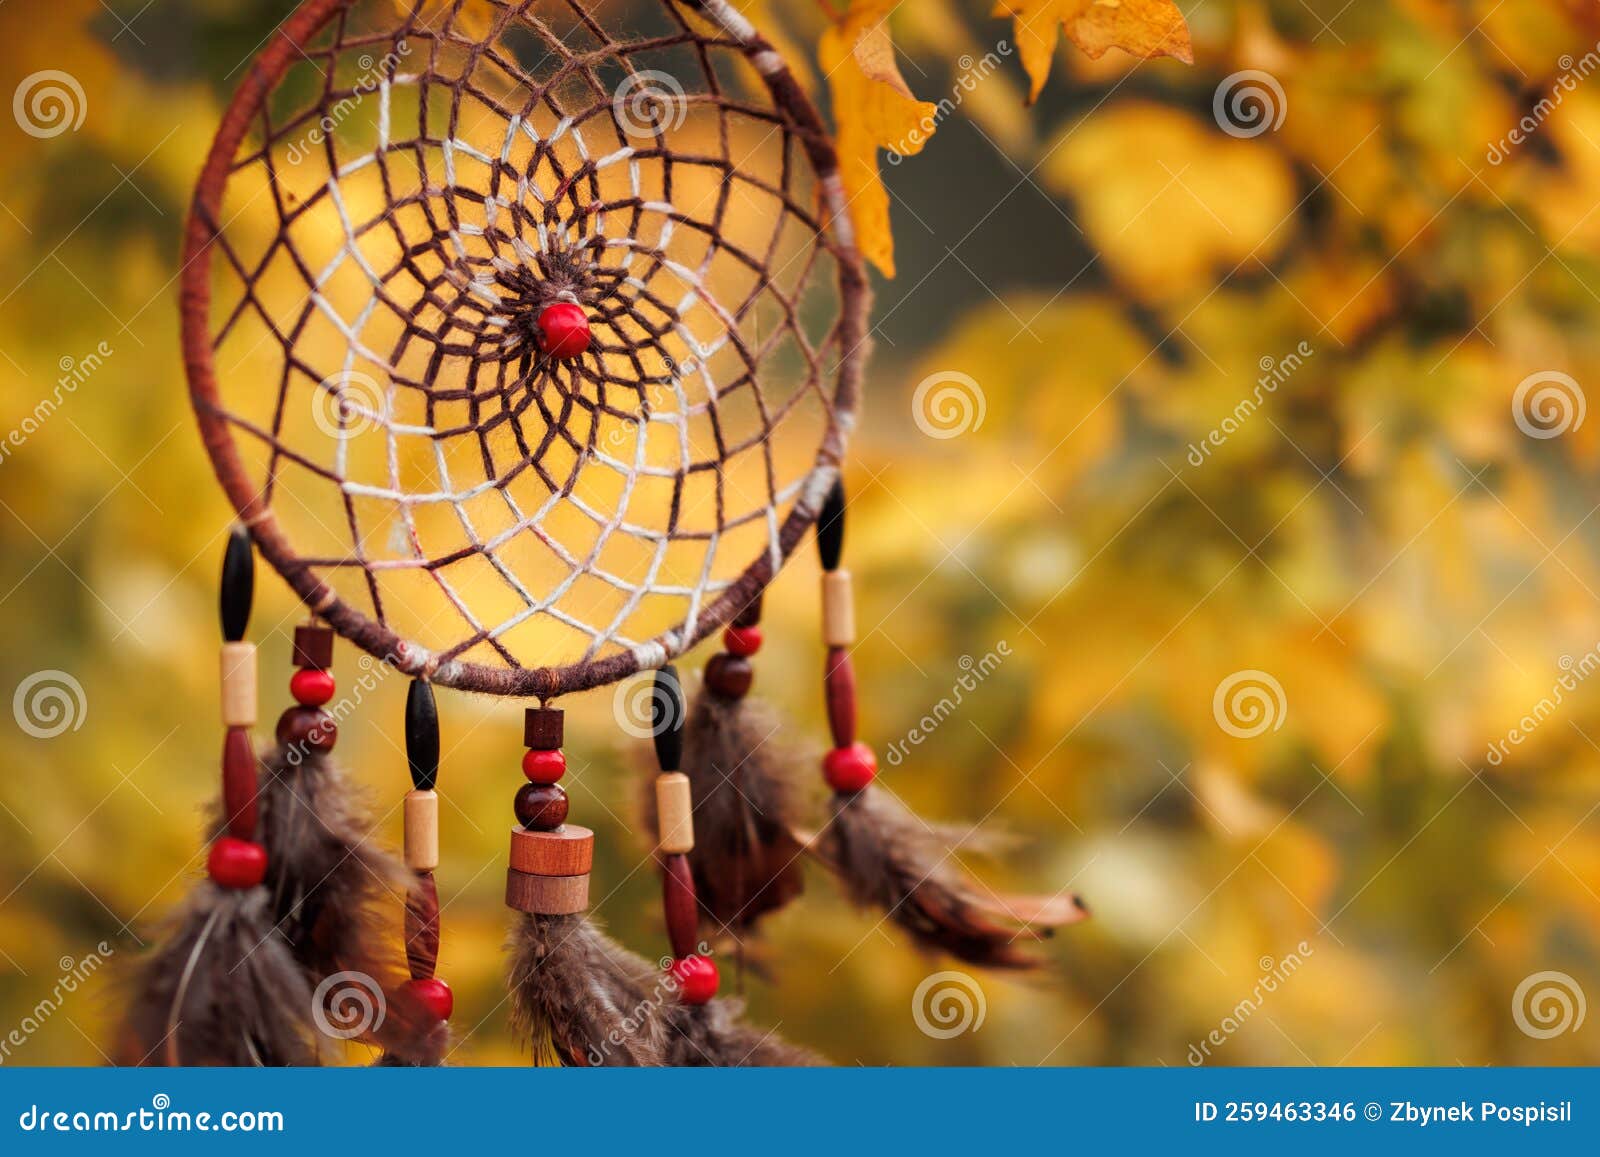 Attrape-drêche Accroché à L'arbre Entre Les Feuilles D'automne Photo stock  - Image du brun, atmosphère: 259463346